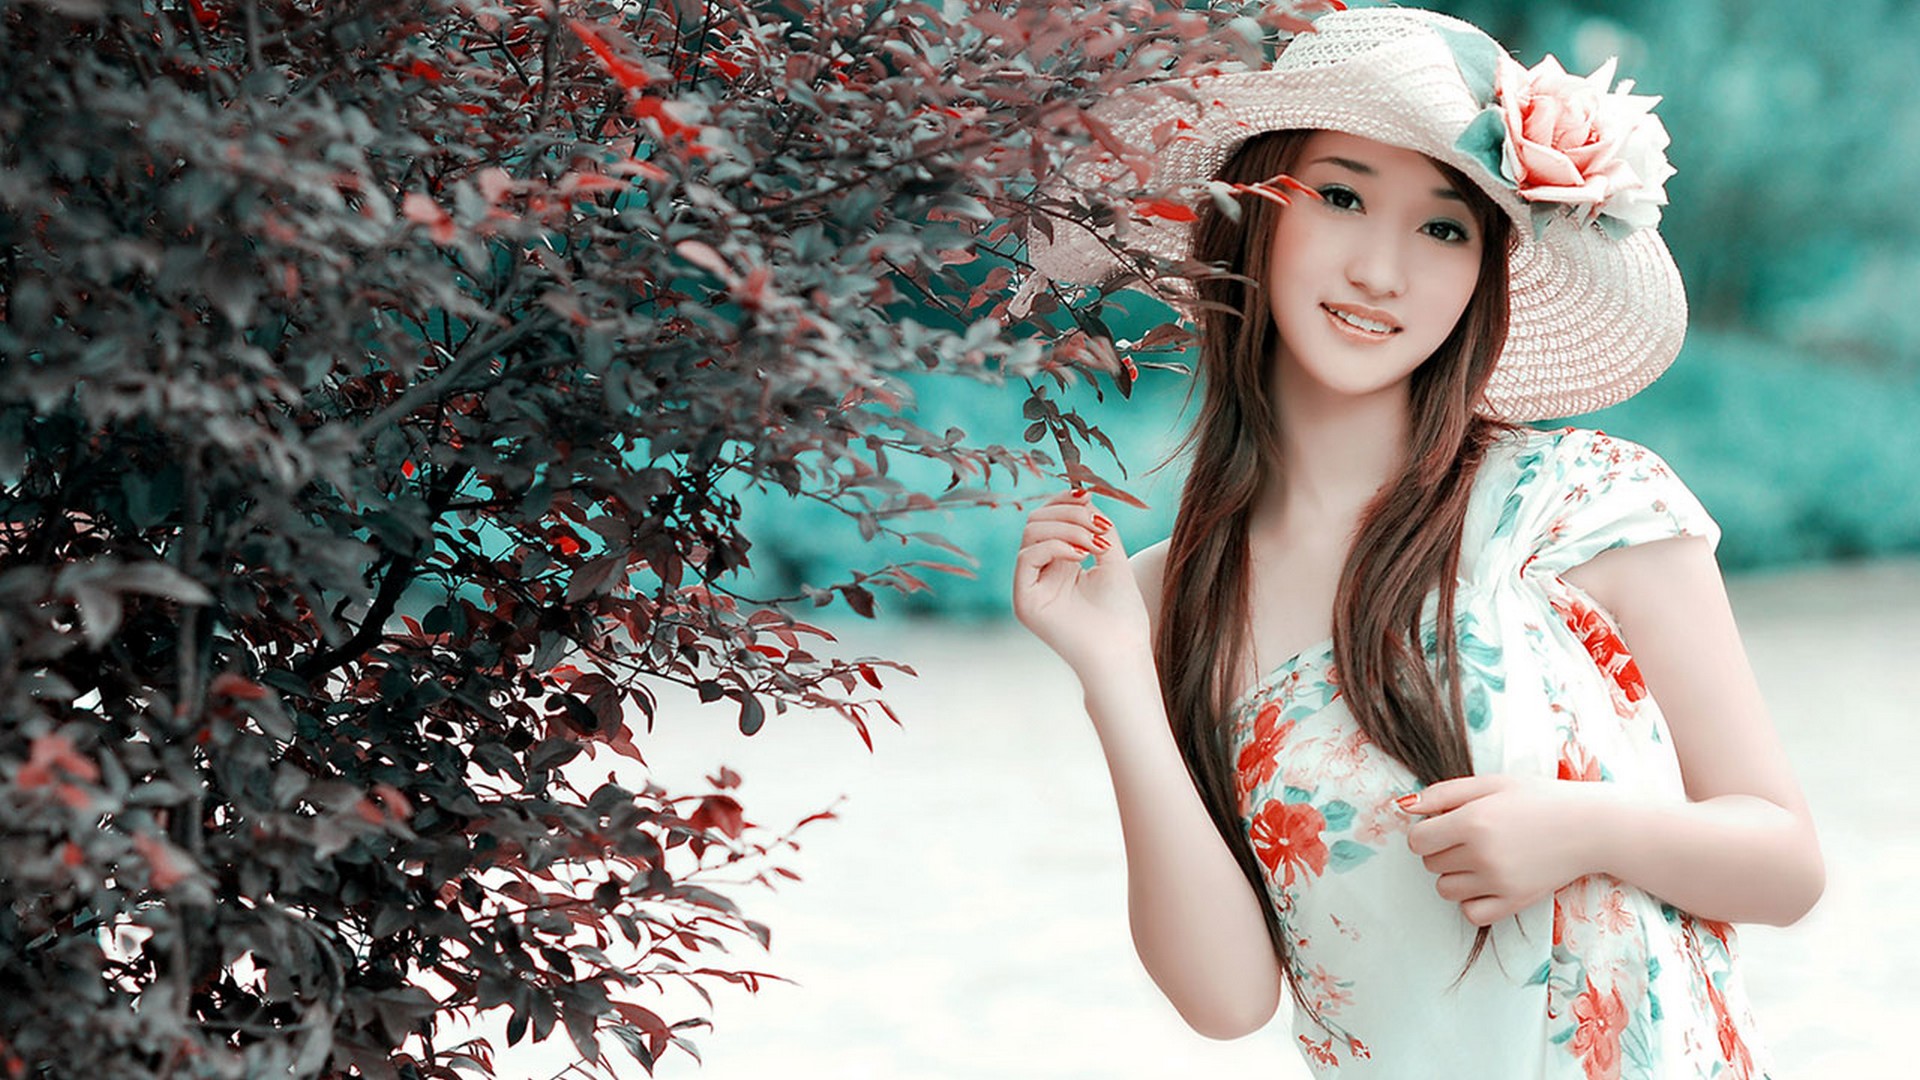 Beautiful China Girl With Flowers 1 | Saverwallpaper.com